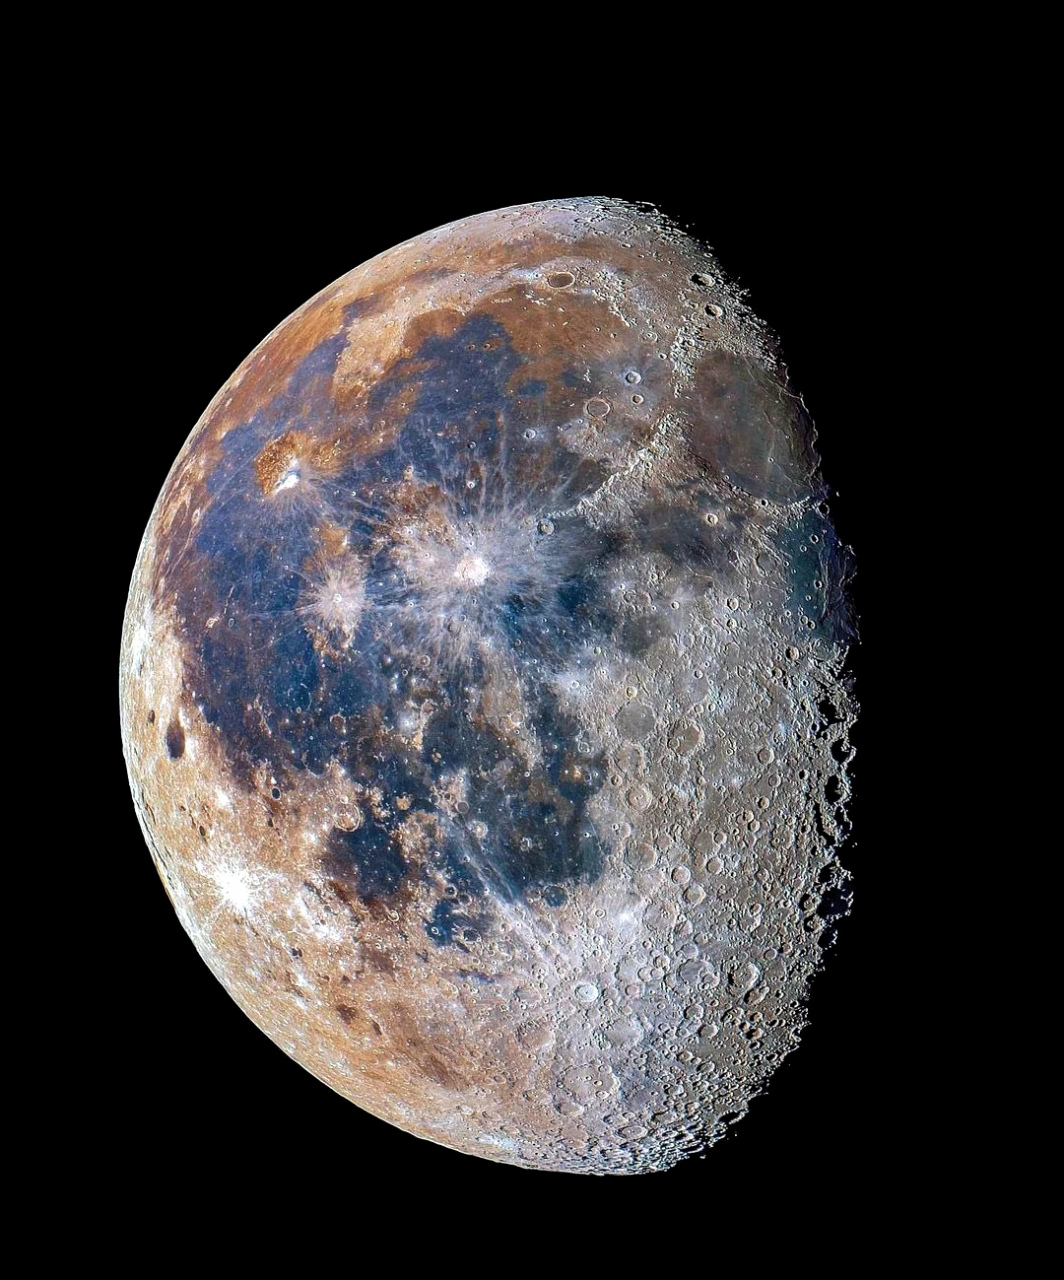 一组月球的高清照片,由nasa拍摄,另附月球的地面标志名称